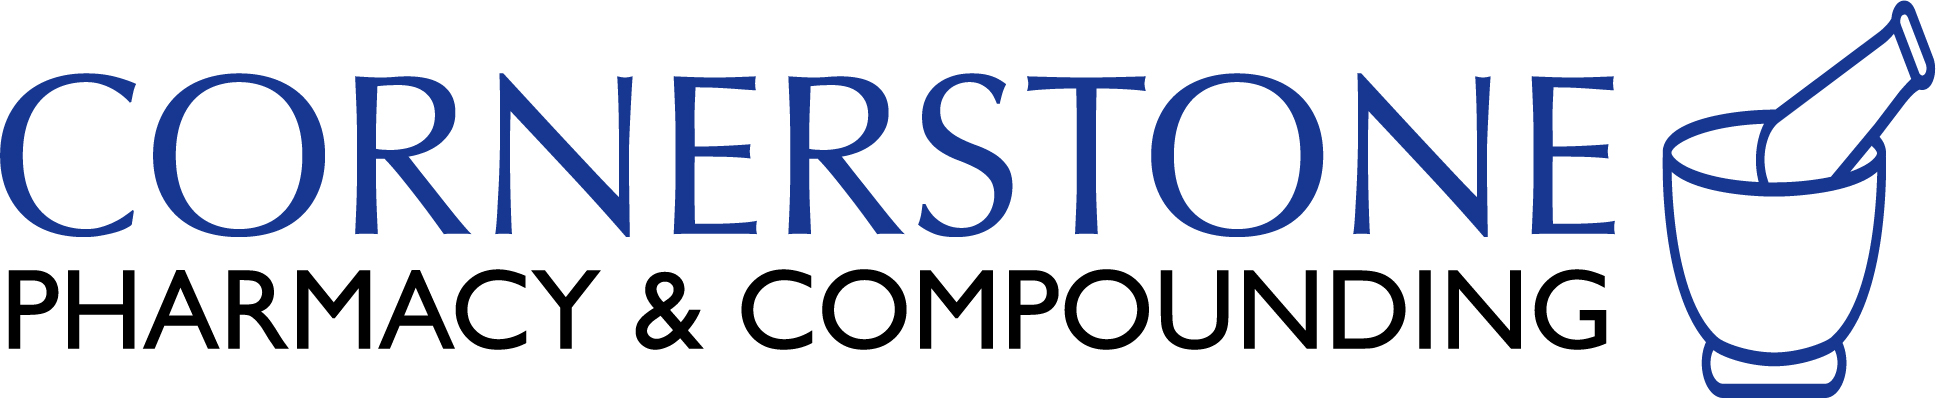 Cornerstone Pharmacy logo